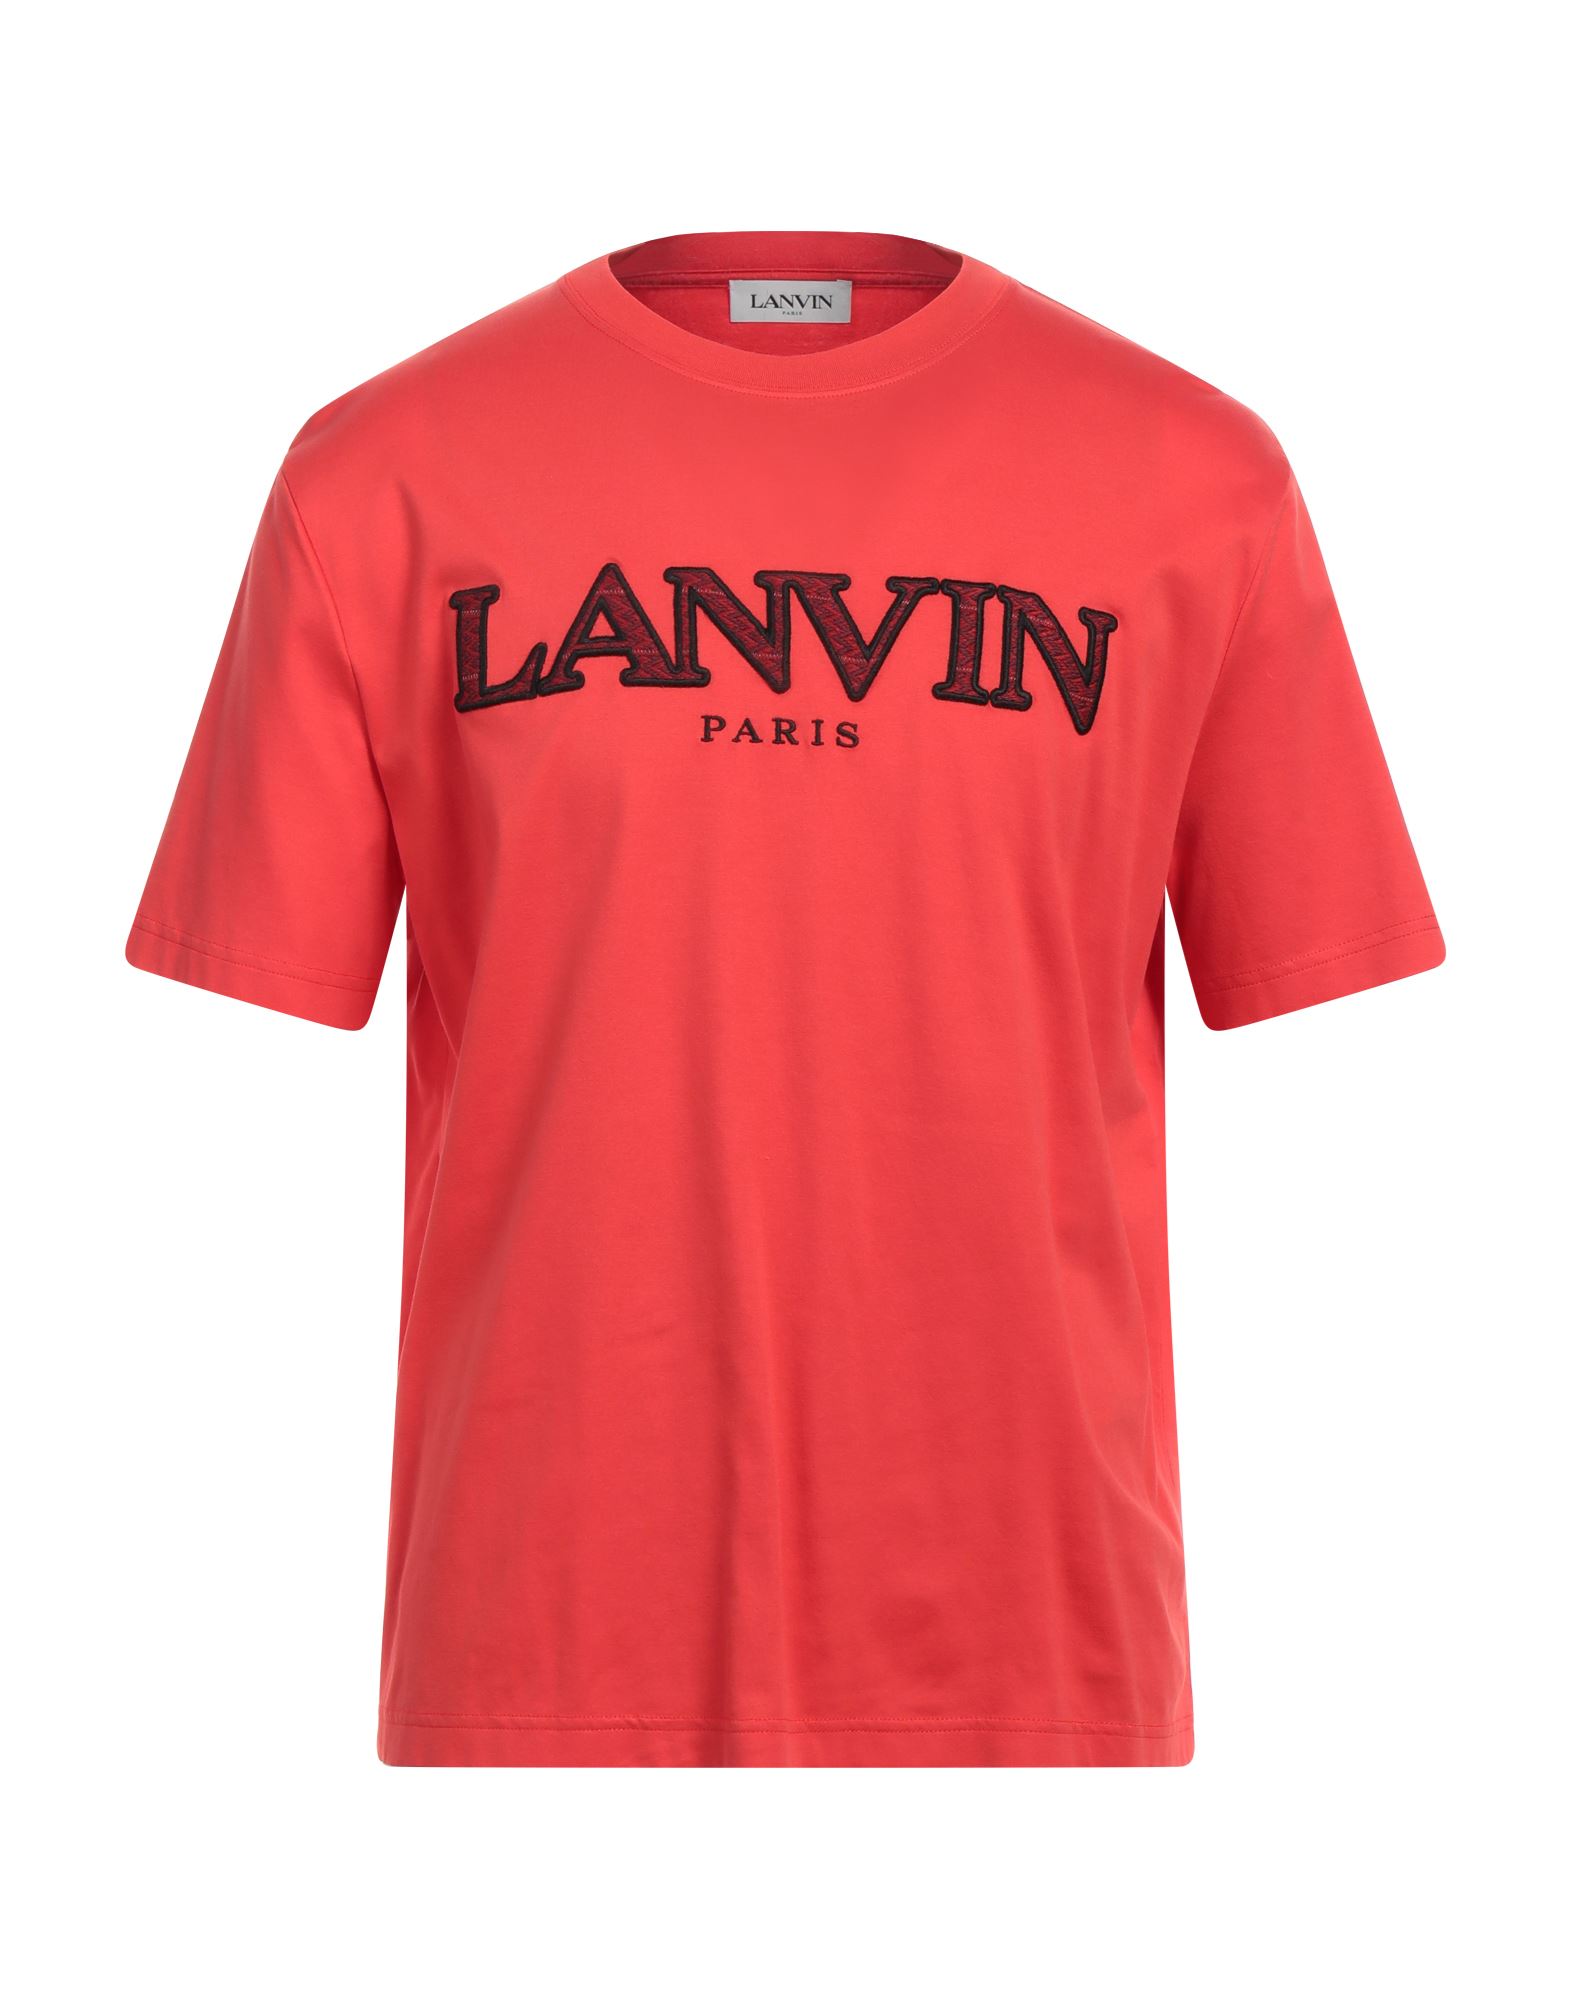 LANVIN T-shirts Herren Tomatenrot von LANVIN